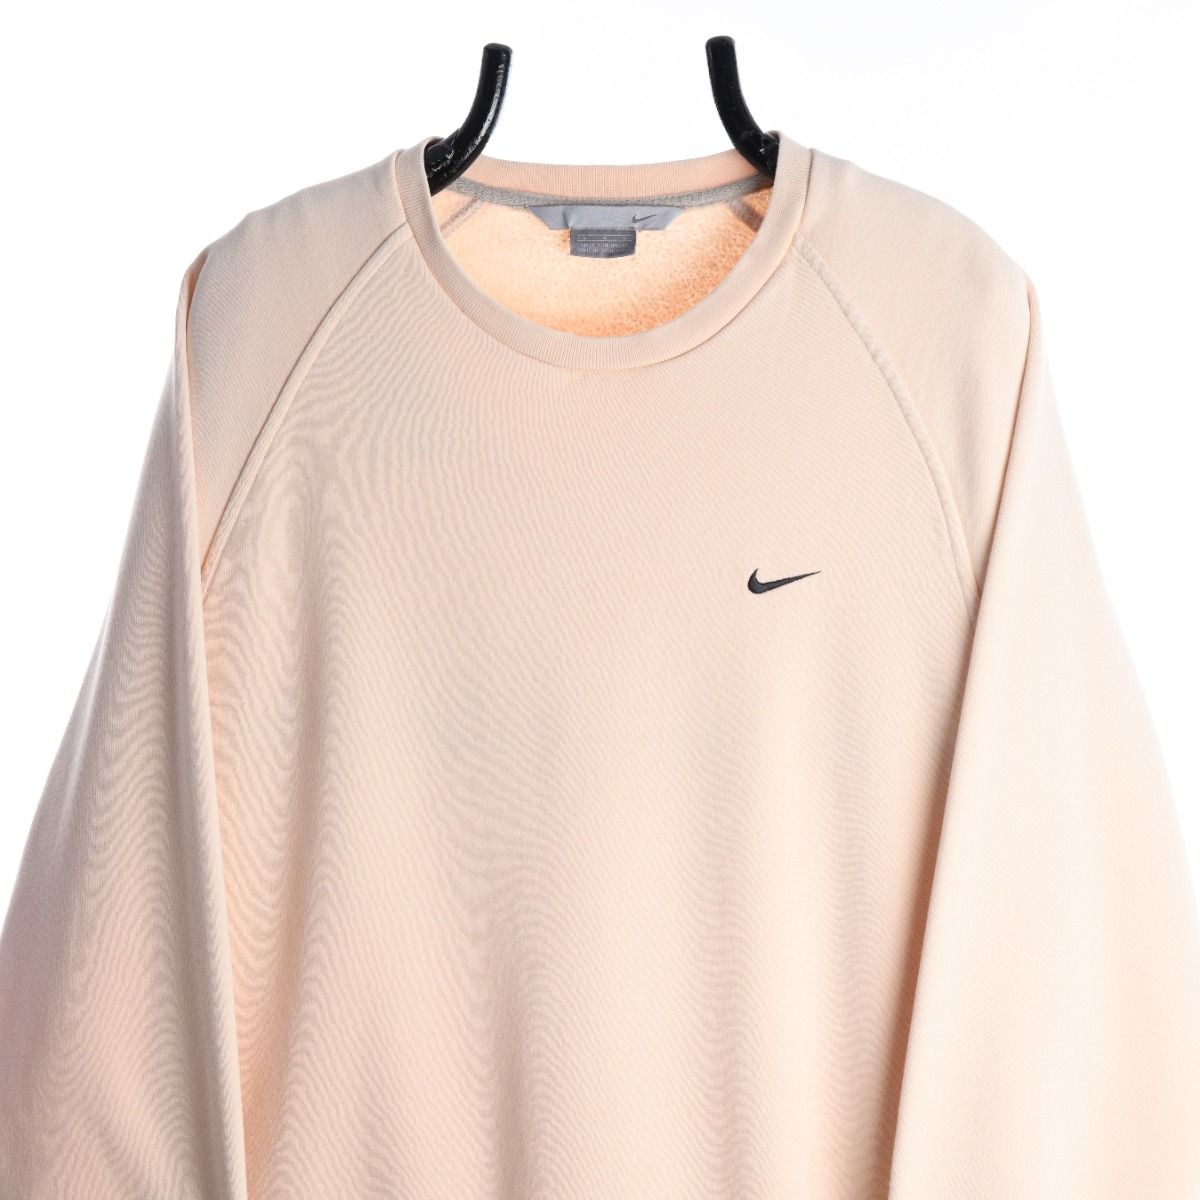 Nike Early 2000s Cream Sweatshirt